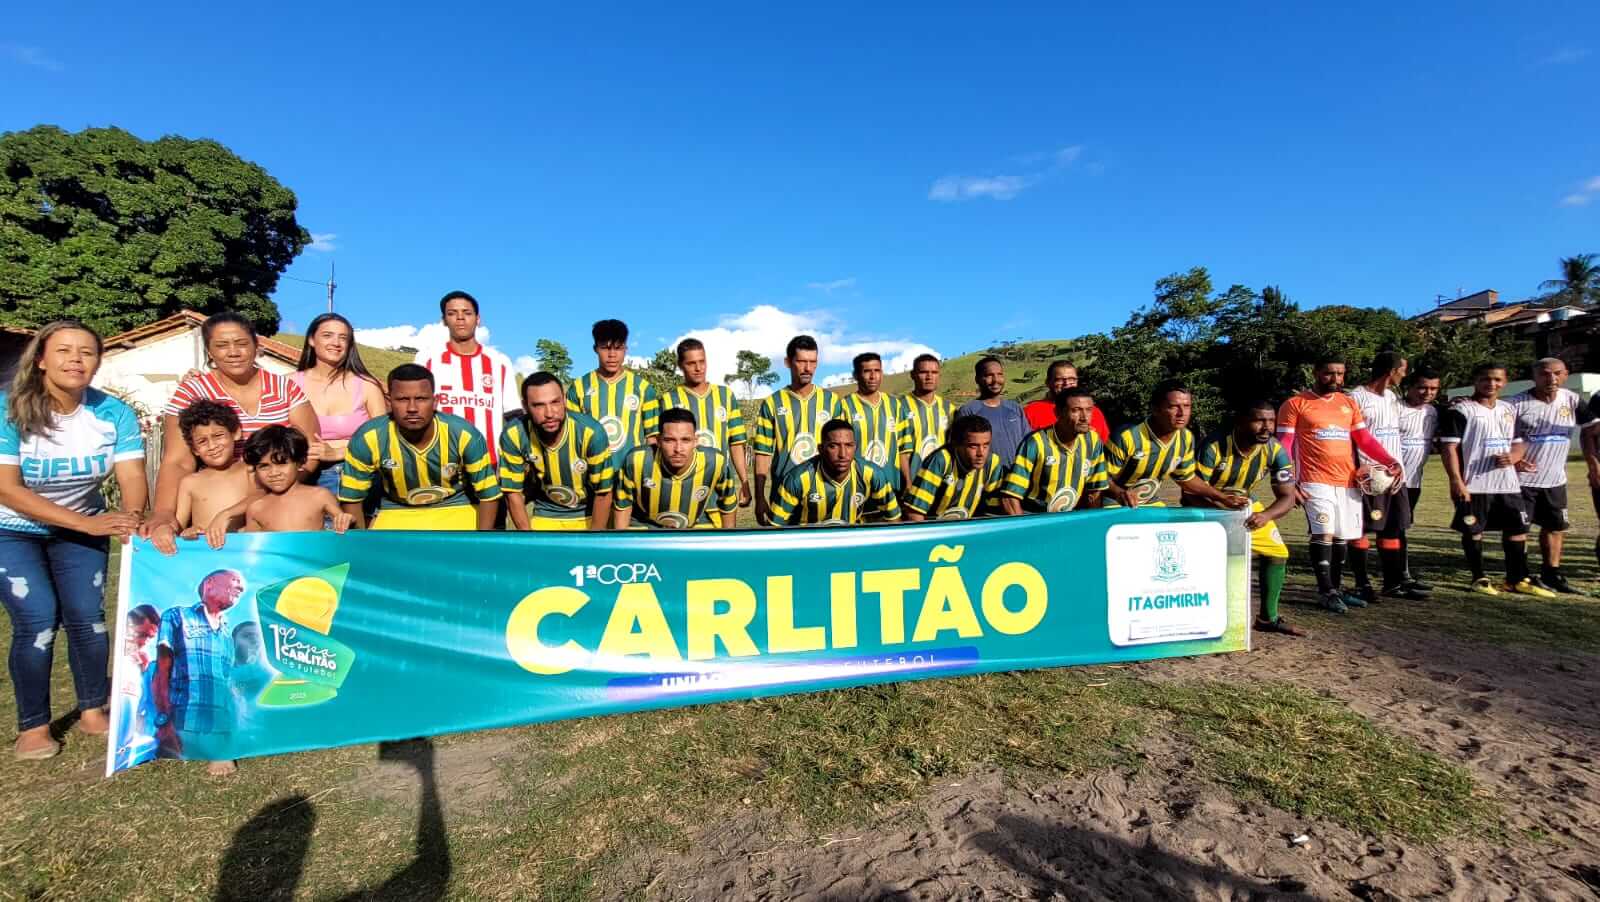 Rodada de abertura da 1ª Copa Carlitão de Futebol movimenta o distrito de União Baiana em Itagimirim 30